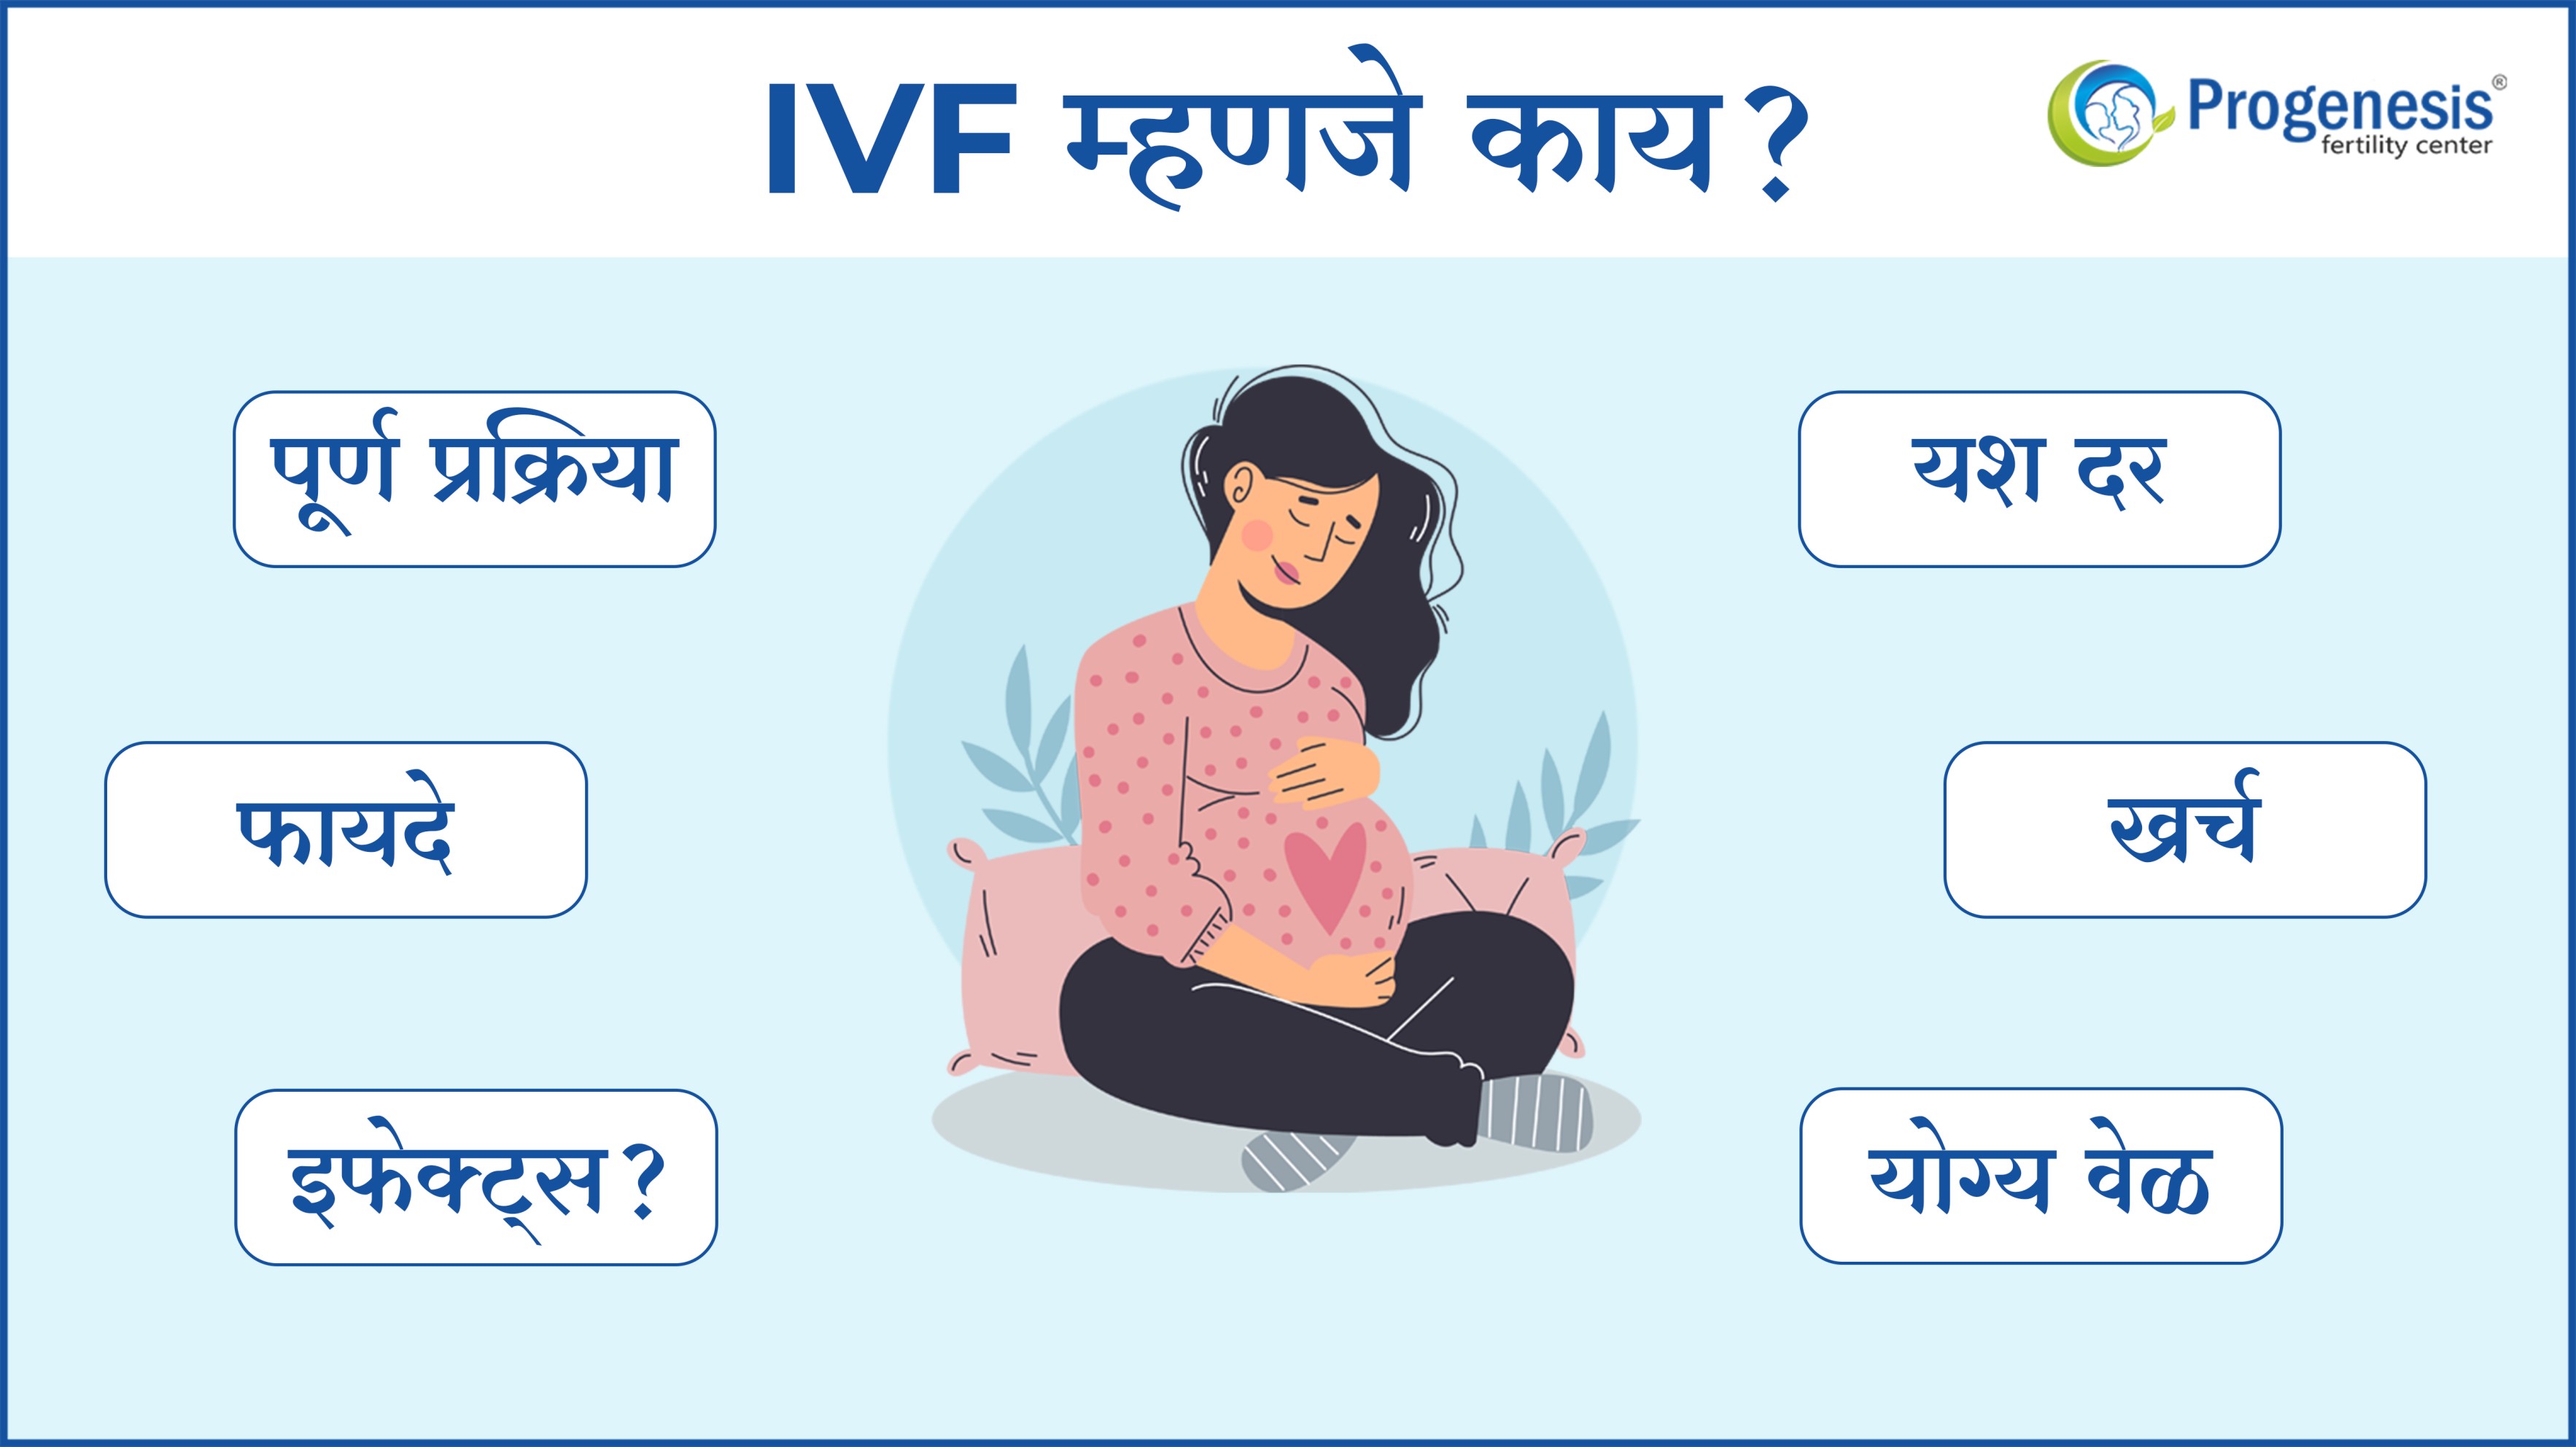 IVF in Marathi